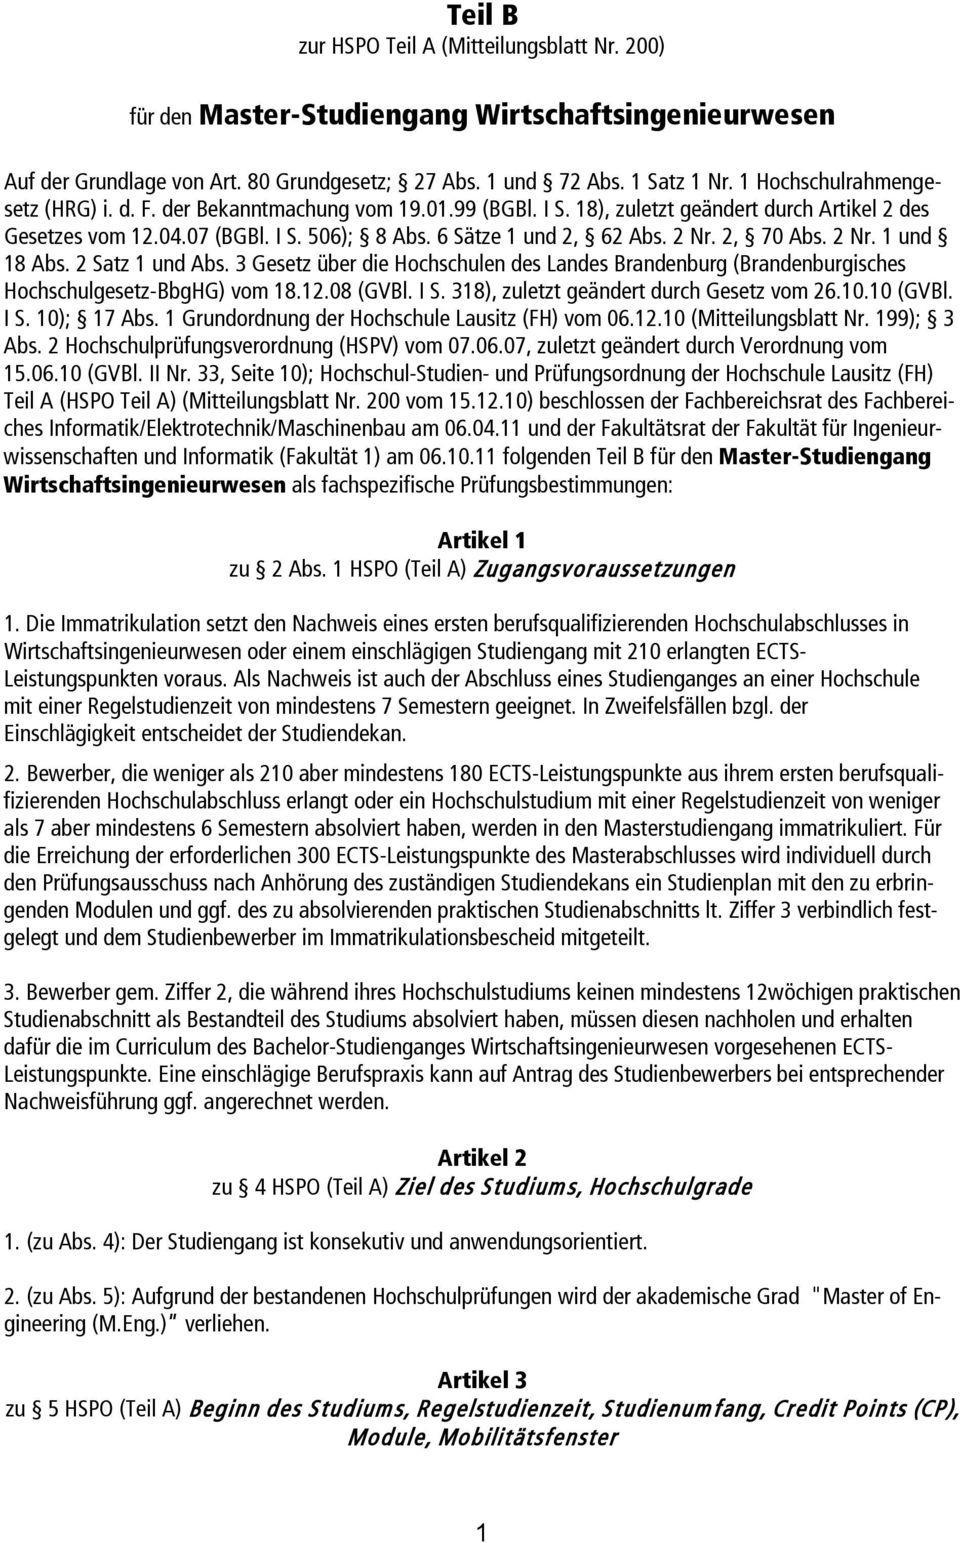 2 Nr. 2, 70 Abs. 2 Nr. 1 und 18 Abs. 2 Satz 1 und Abs. 3 Gesetz über die Hochschulen des Landes Brandenburg (Brandenburgisches Hochschulgesetz-BbgHG) vom 18.12.08 (GVBl. I S.